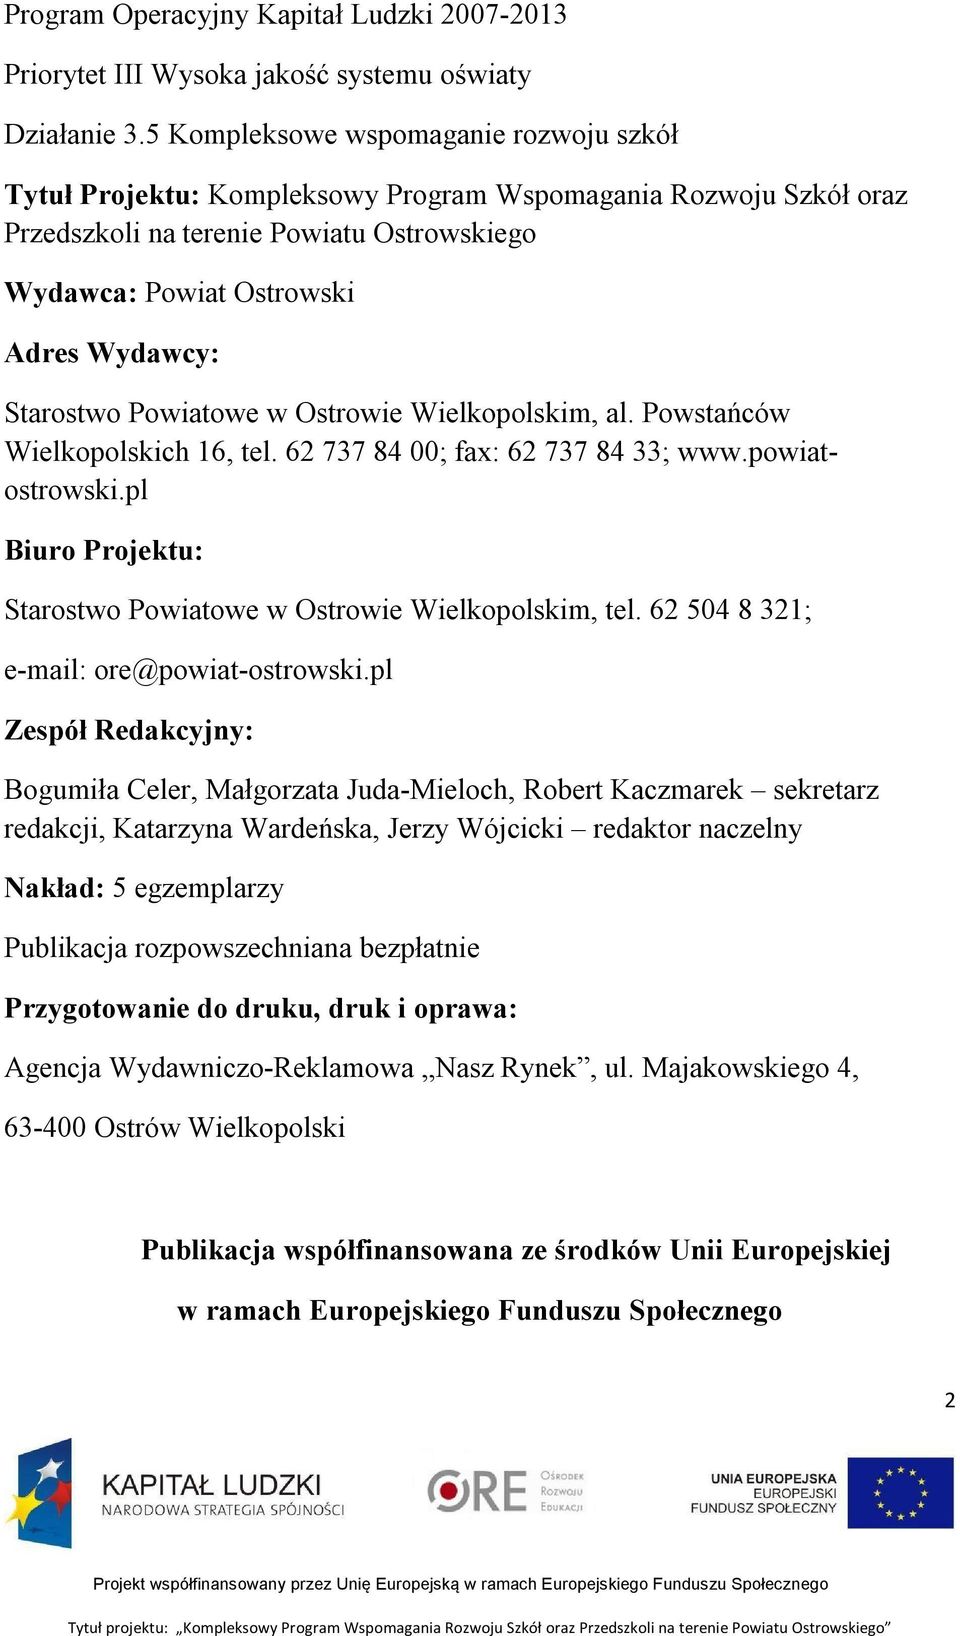 Starostwo Powiatowe w Ostrowie Wielkopolskim, al. Powstańców Wielkopolskich 16, tel. 62 737 84 00; fax: 62 737 84 33; www.powiatostrowski.